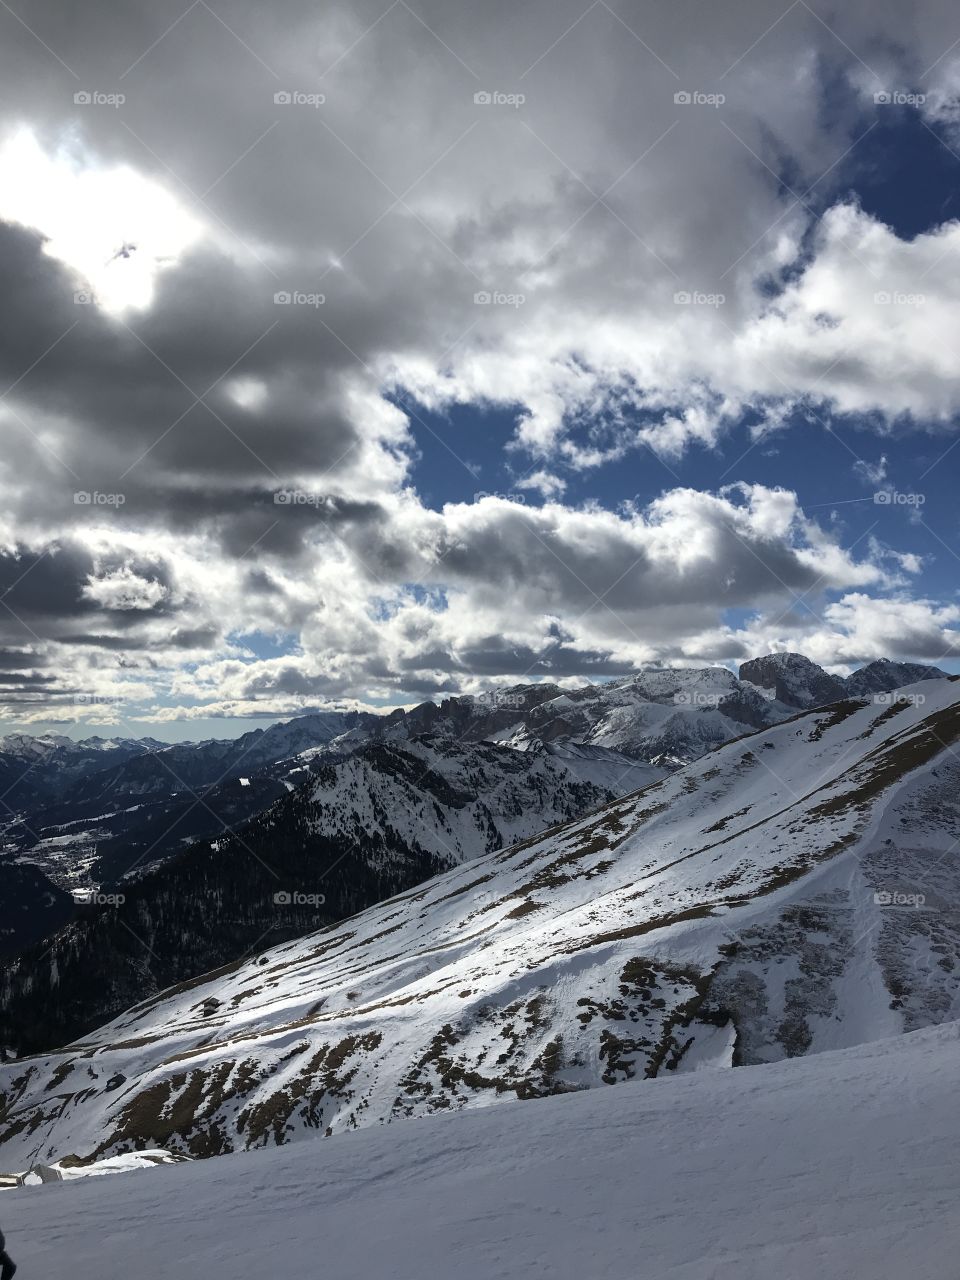 Italy skiing - Canazei 